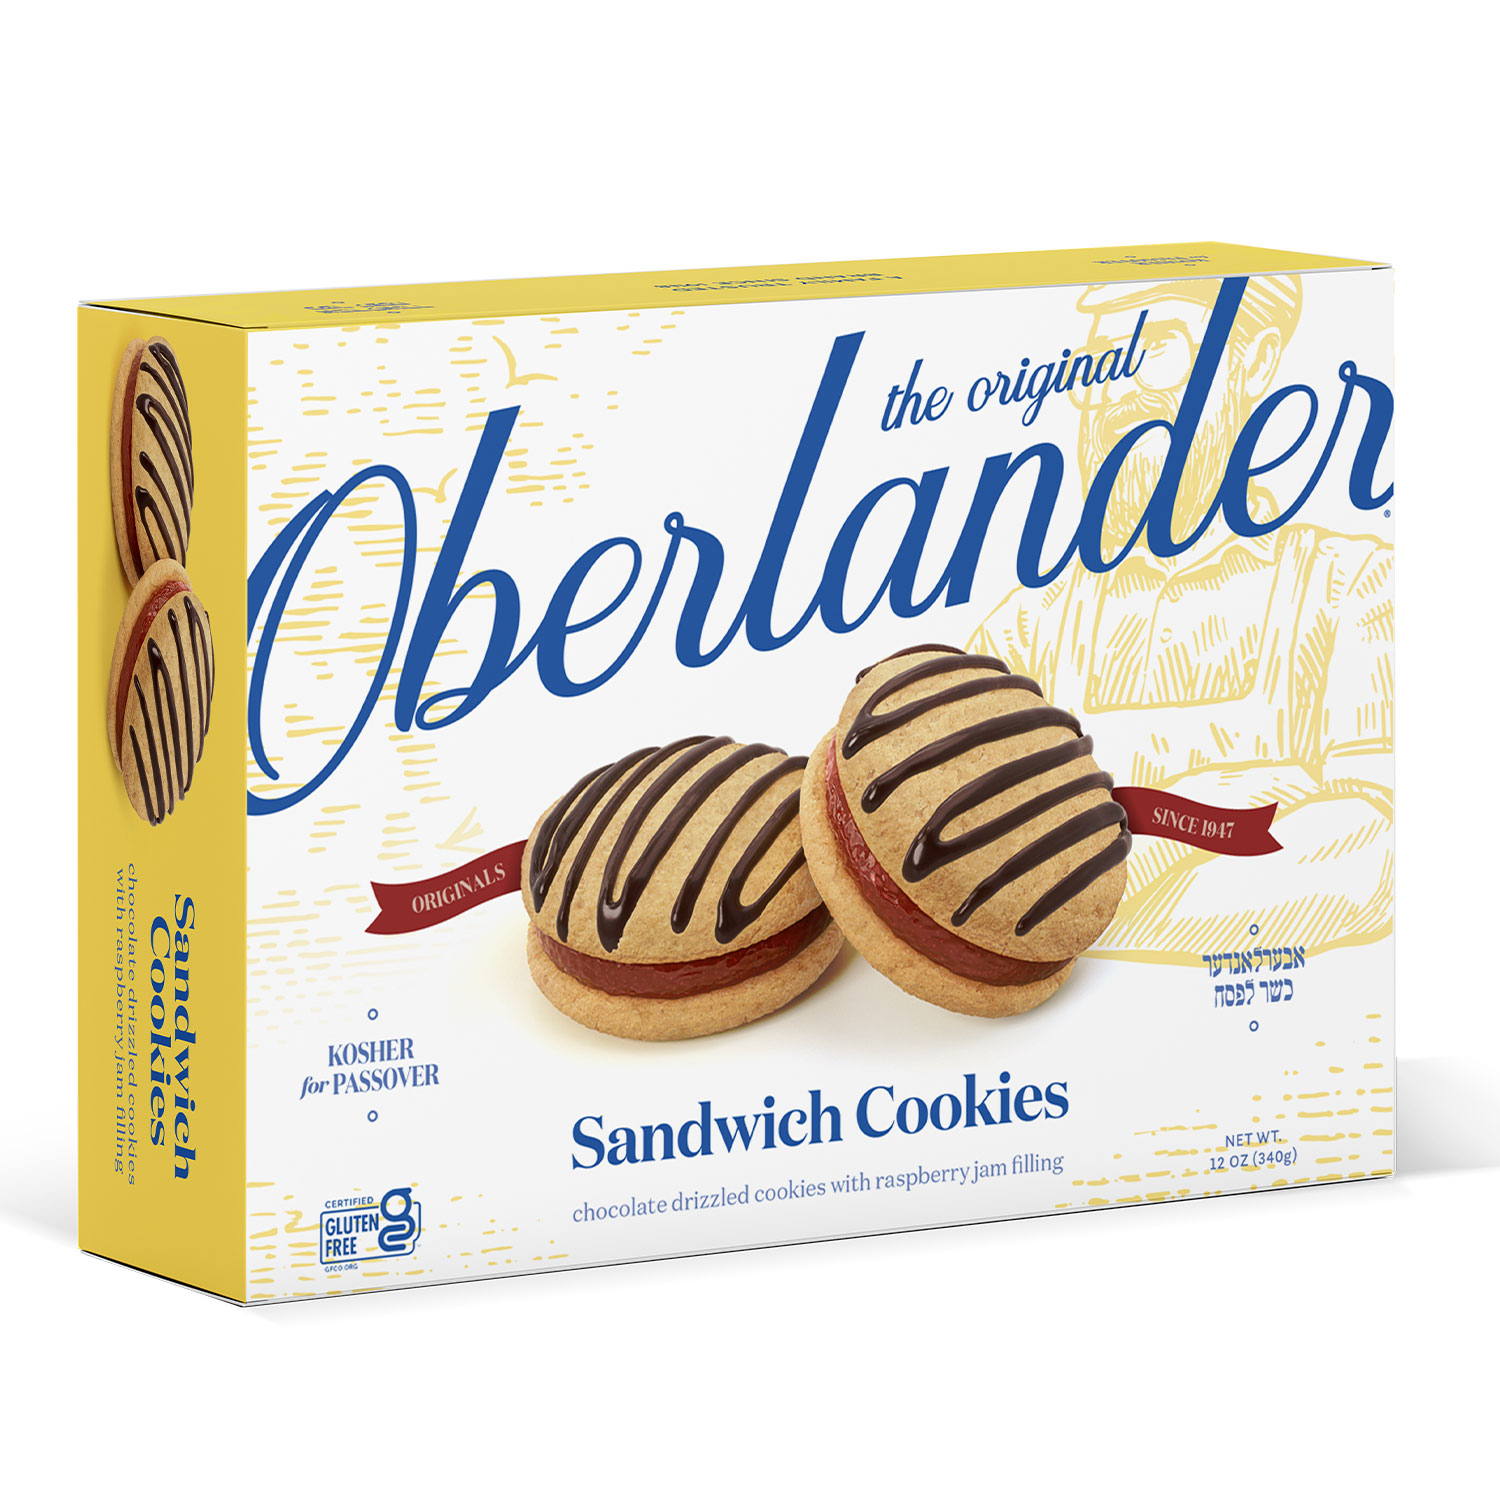 OBERLANDER SANDWICH COOKIES